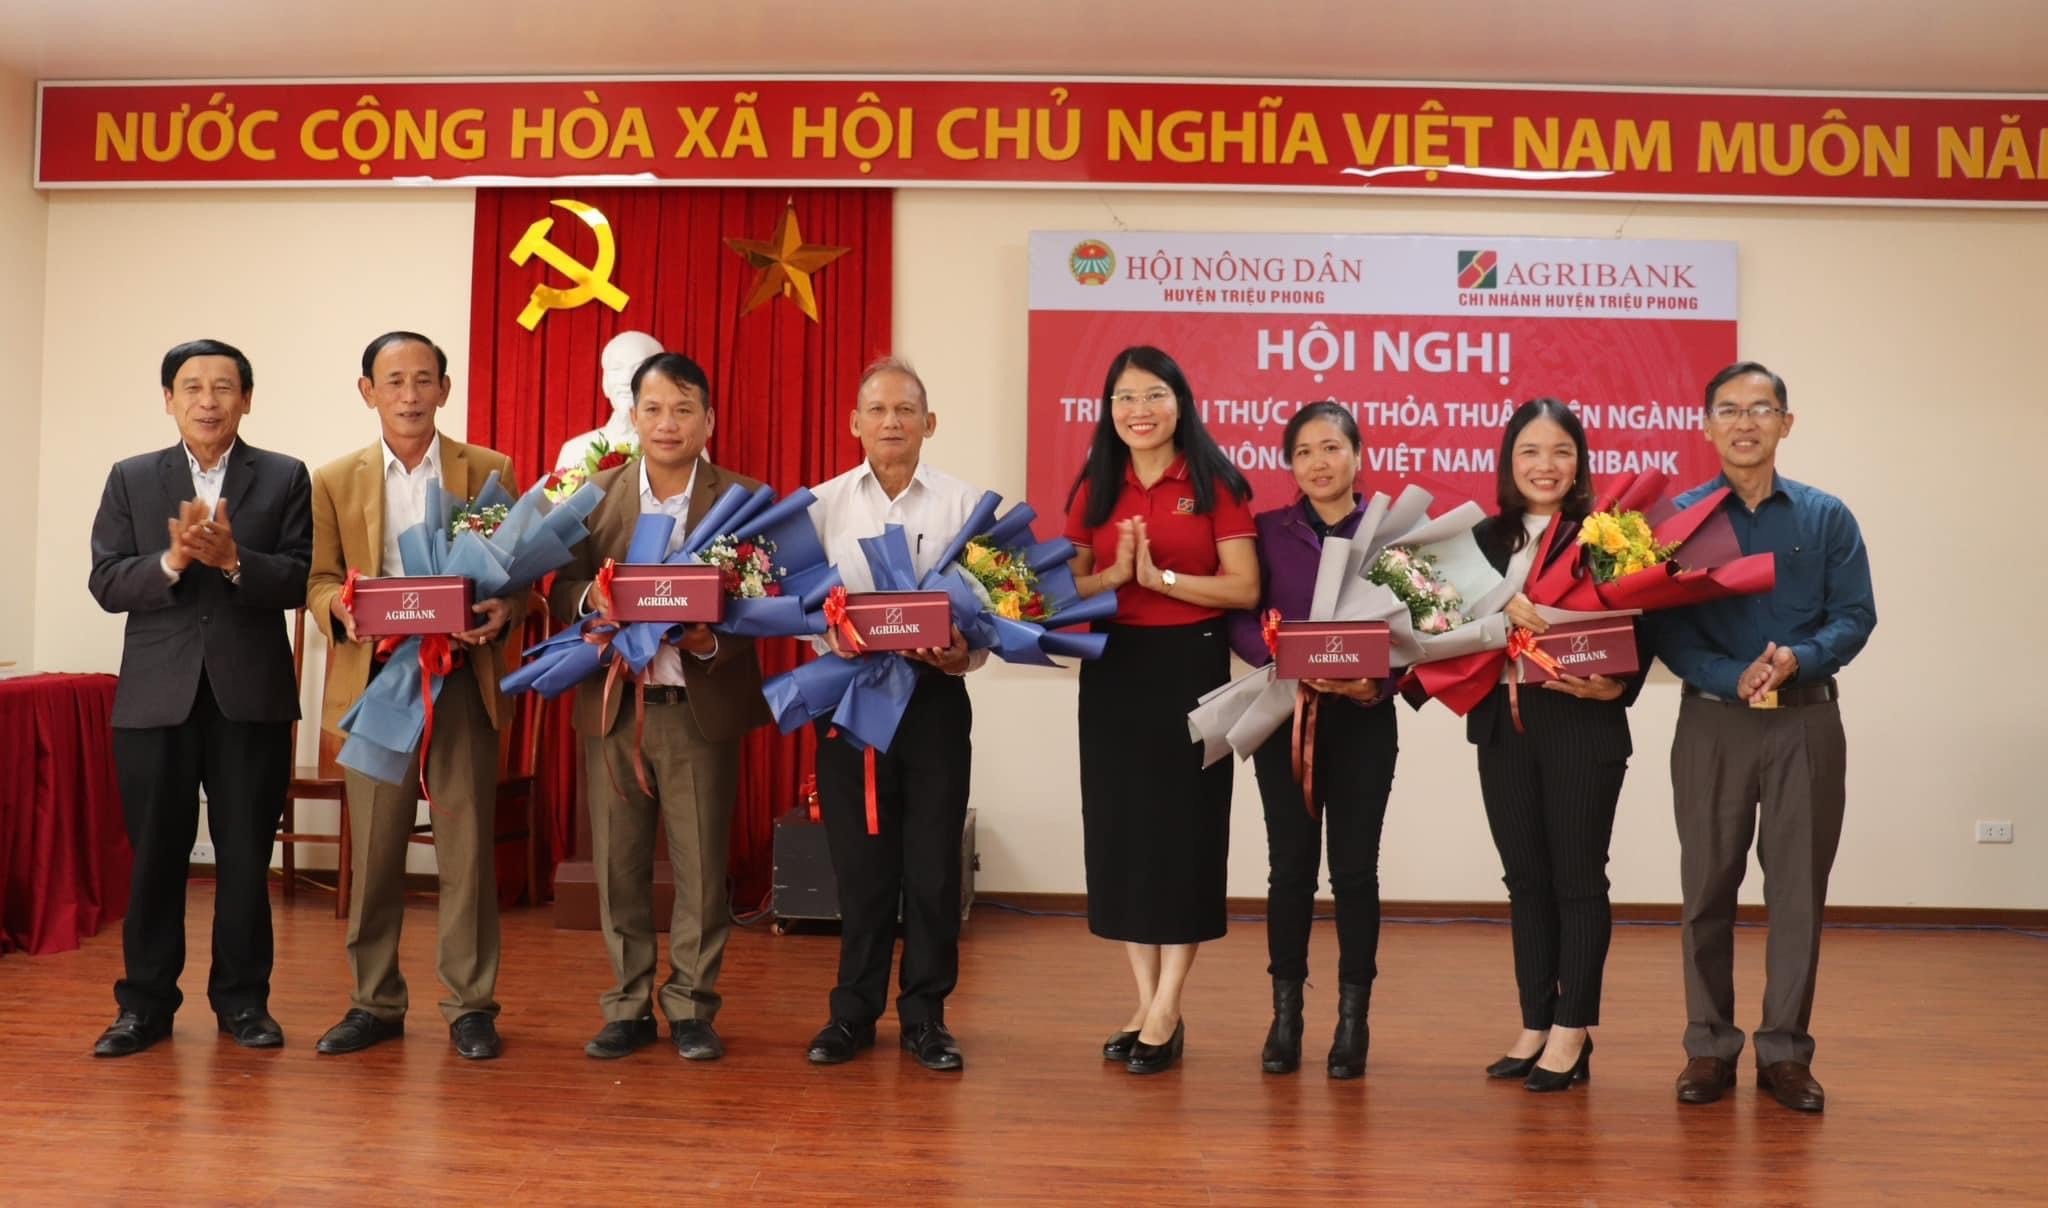 Quảng Trị: Agribank Triệu Phong “bắt tay” với Hội Nông dân triển khai chính sách tín dụng phục vụ phát triển nông nghiệp, nông thôn- Ảnh 3.